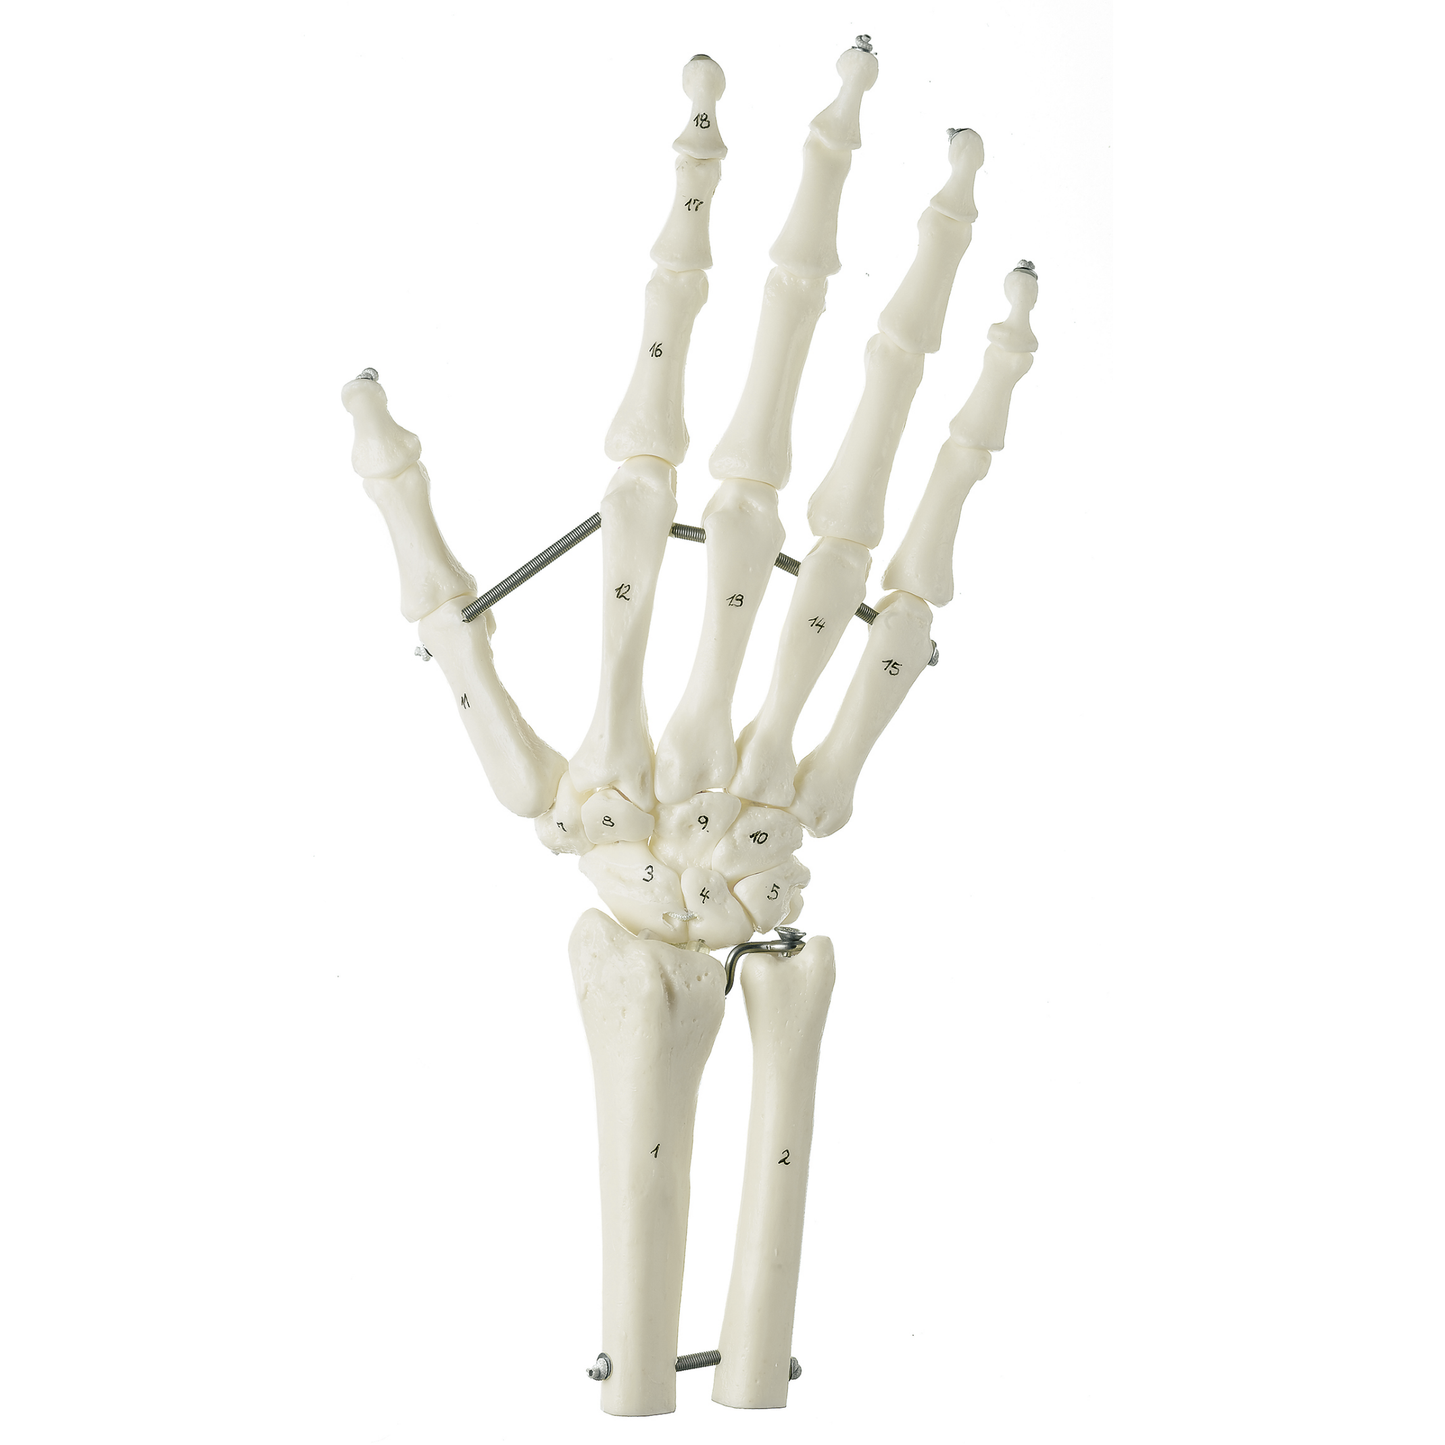 SOMSO skeletmodel af hånd med del af underarmsknoglerne monteret på elastikker